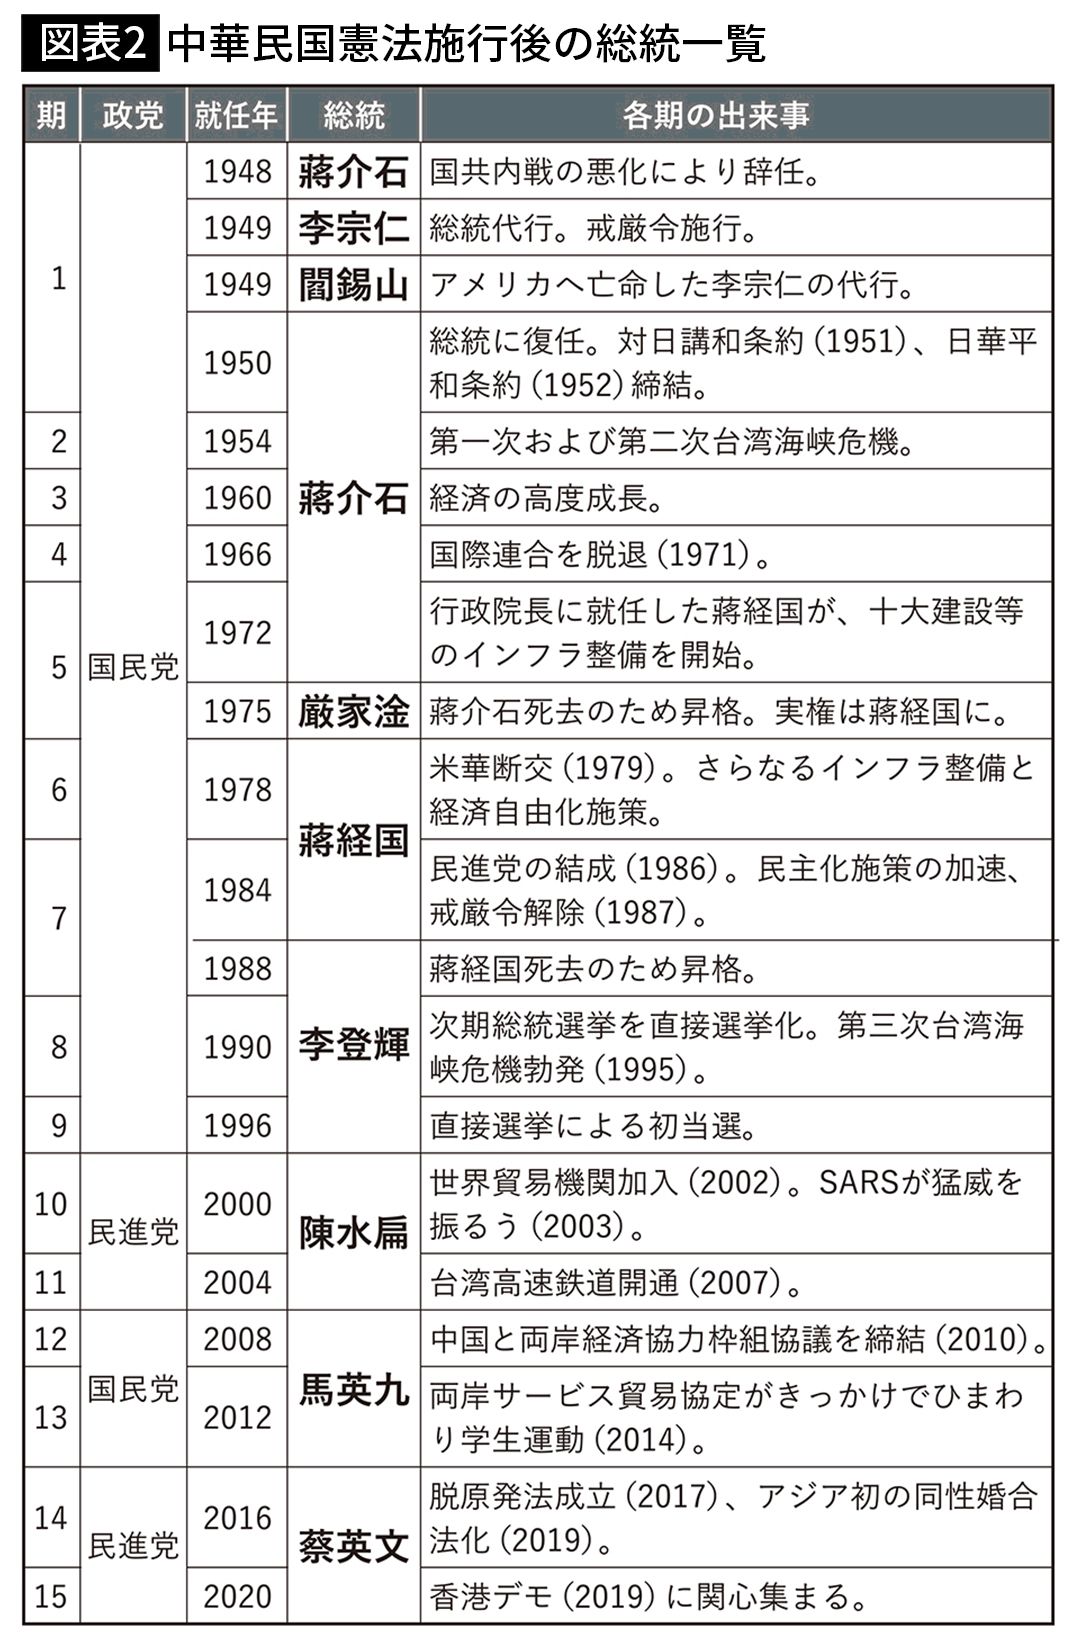 【図表2】中華民国憲法施行後の総統一覧